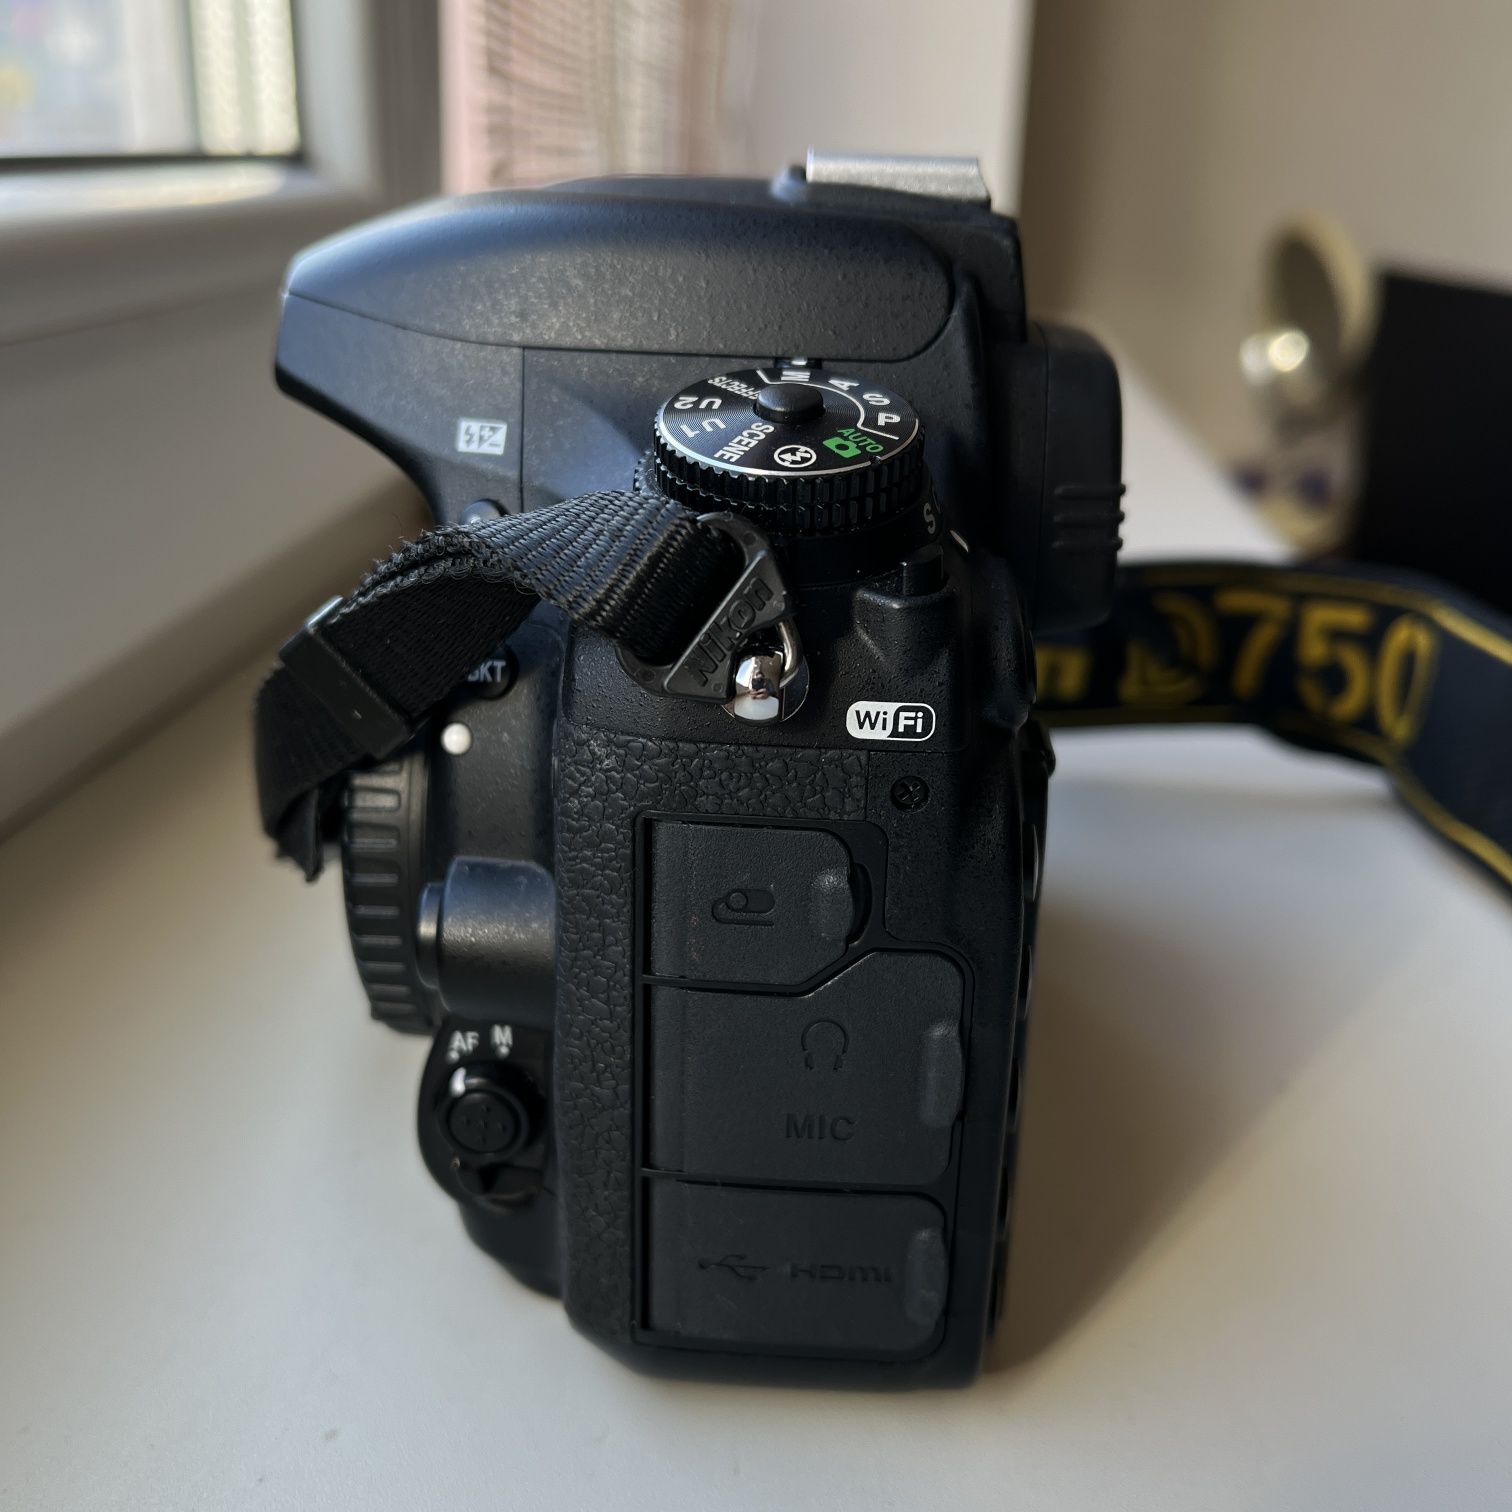 Фотоаппарат Nikon D750 пробег 15т. фото